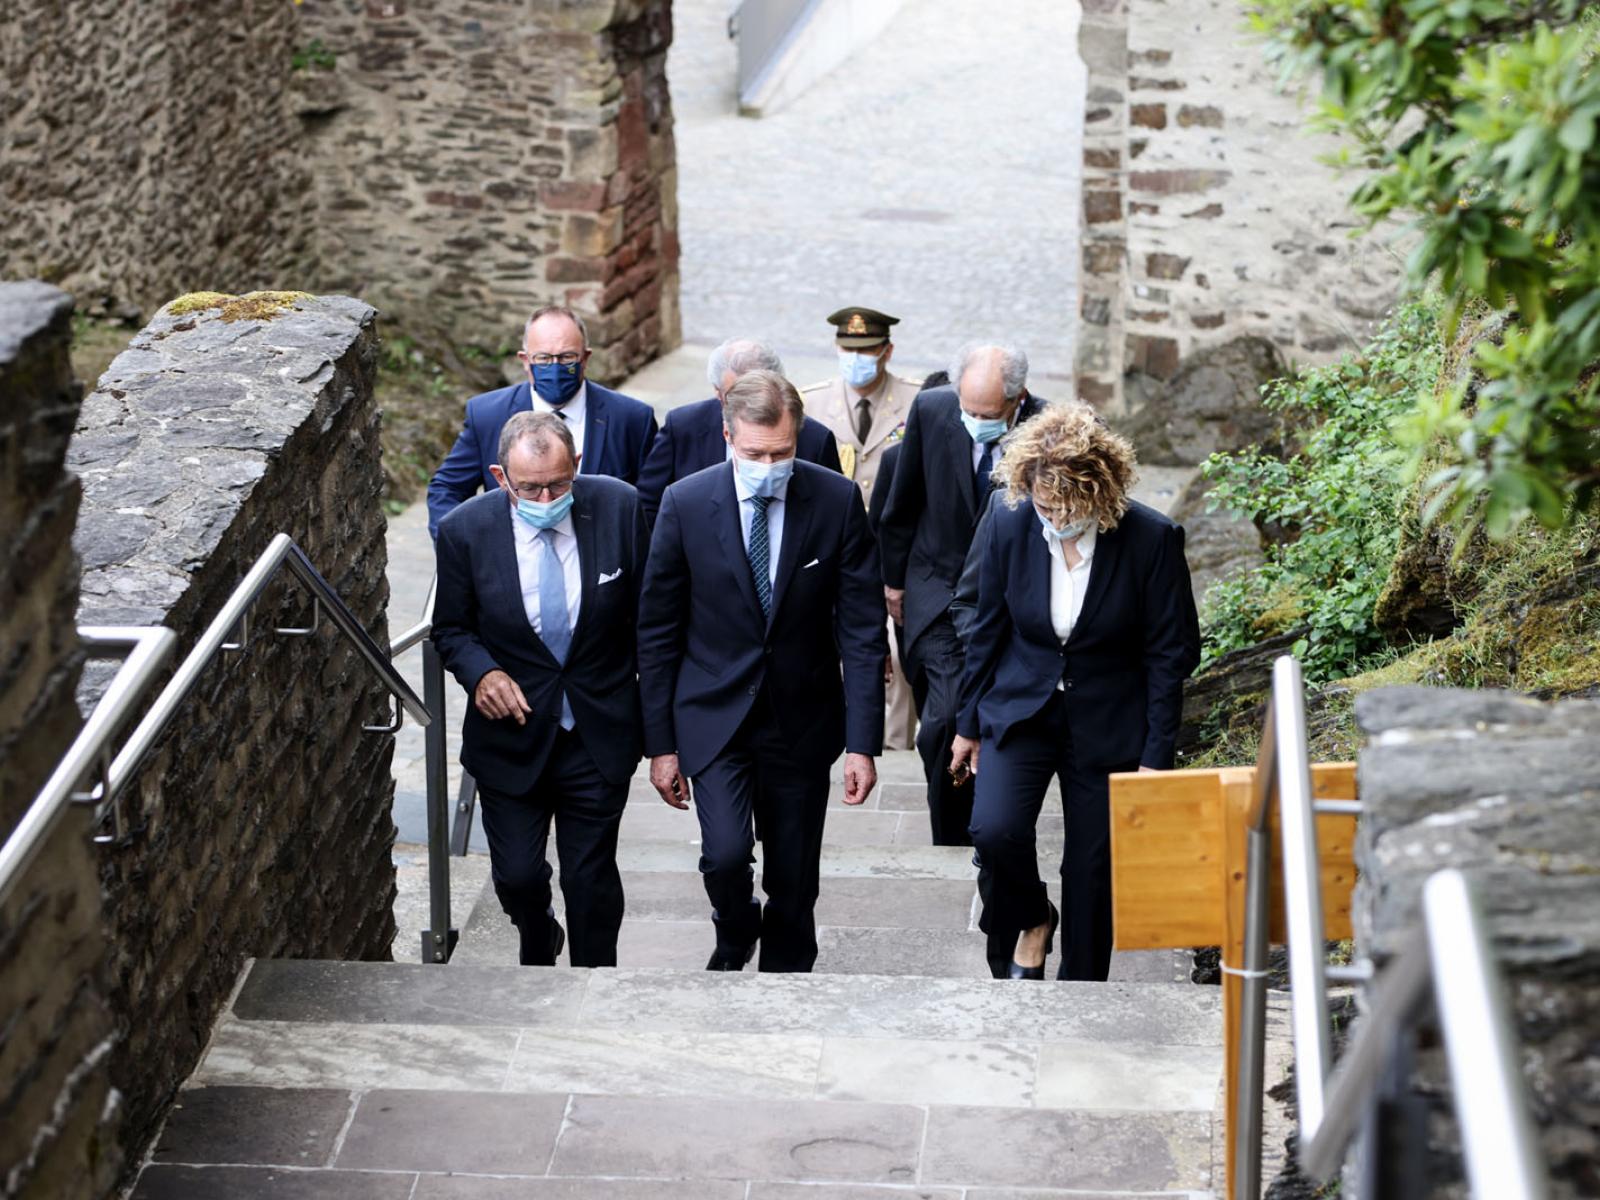 Le Grand-Duc, accompagné de M. Fernand Etgen et de Mme Guida Biewer, se dirige vers le Château de Vianden